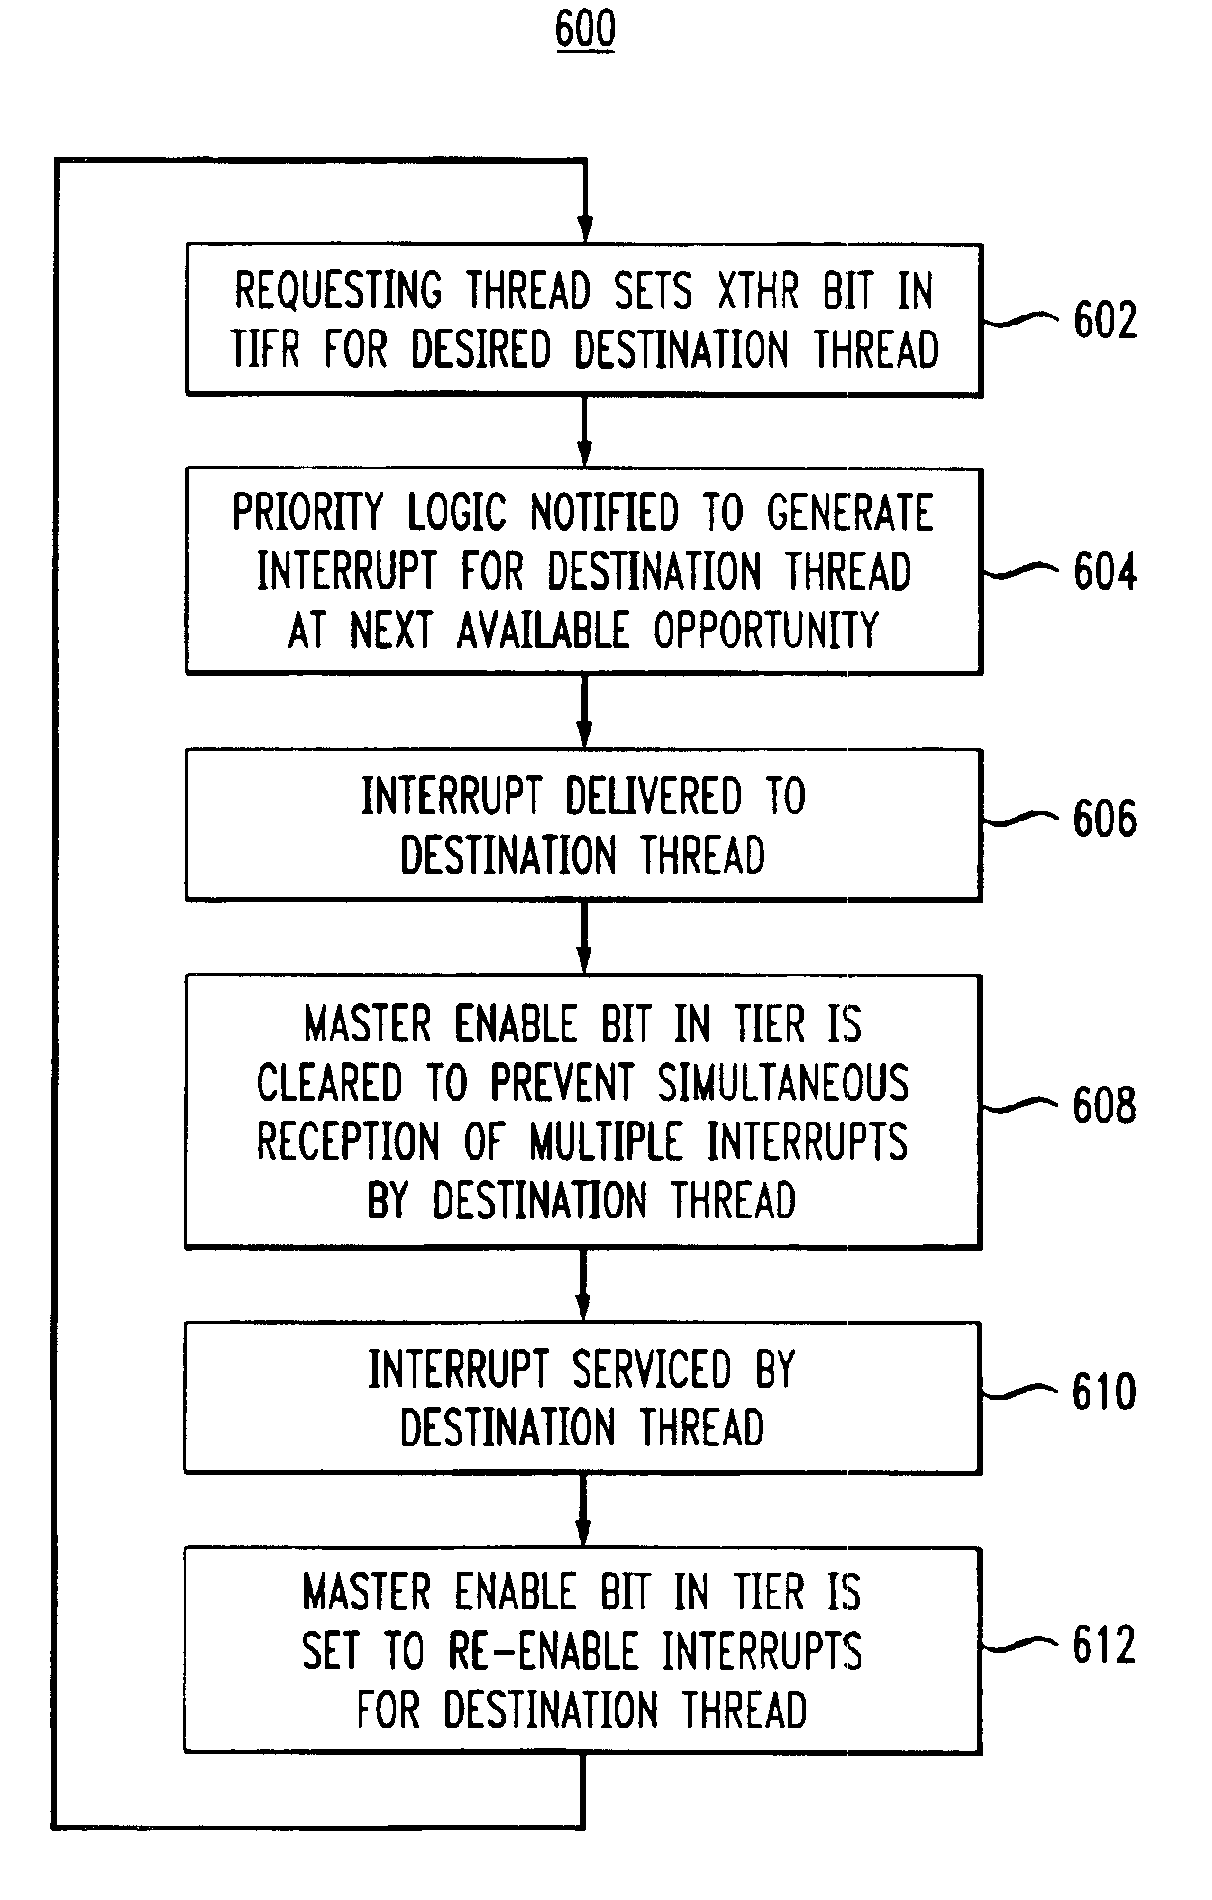 Inter-thread communications using shared interrupt register